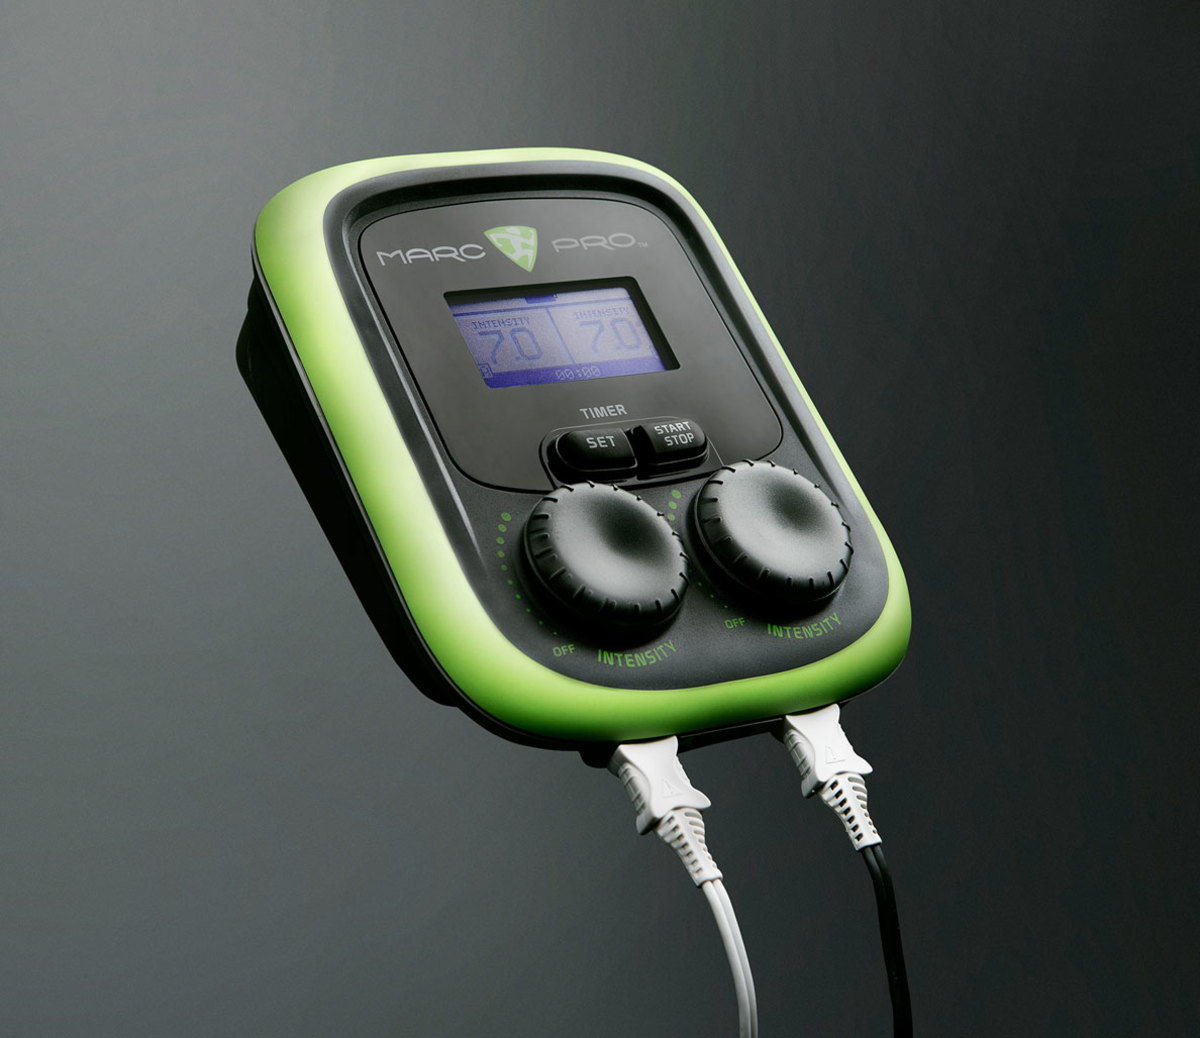 15 Marc Pro ideas  electronic muscle stimulator, muscle recovery, muscle  stimulator